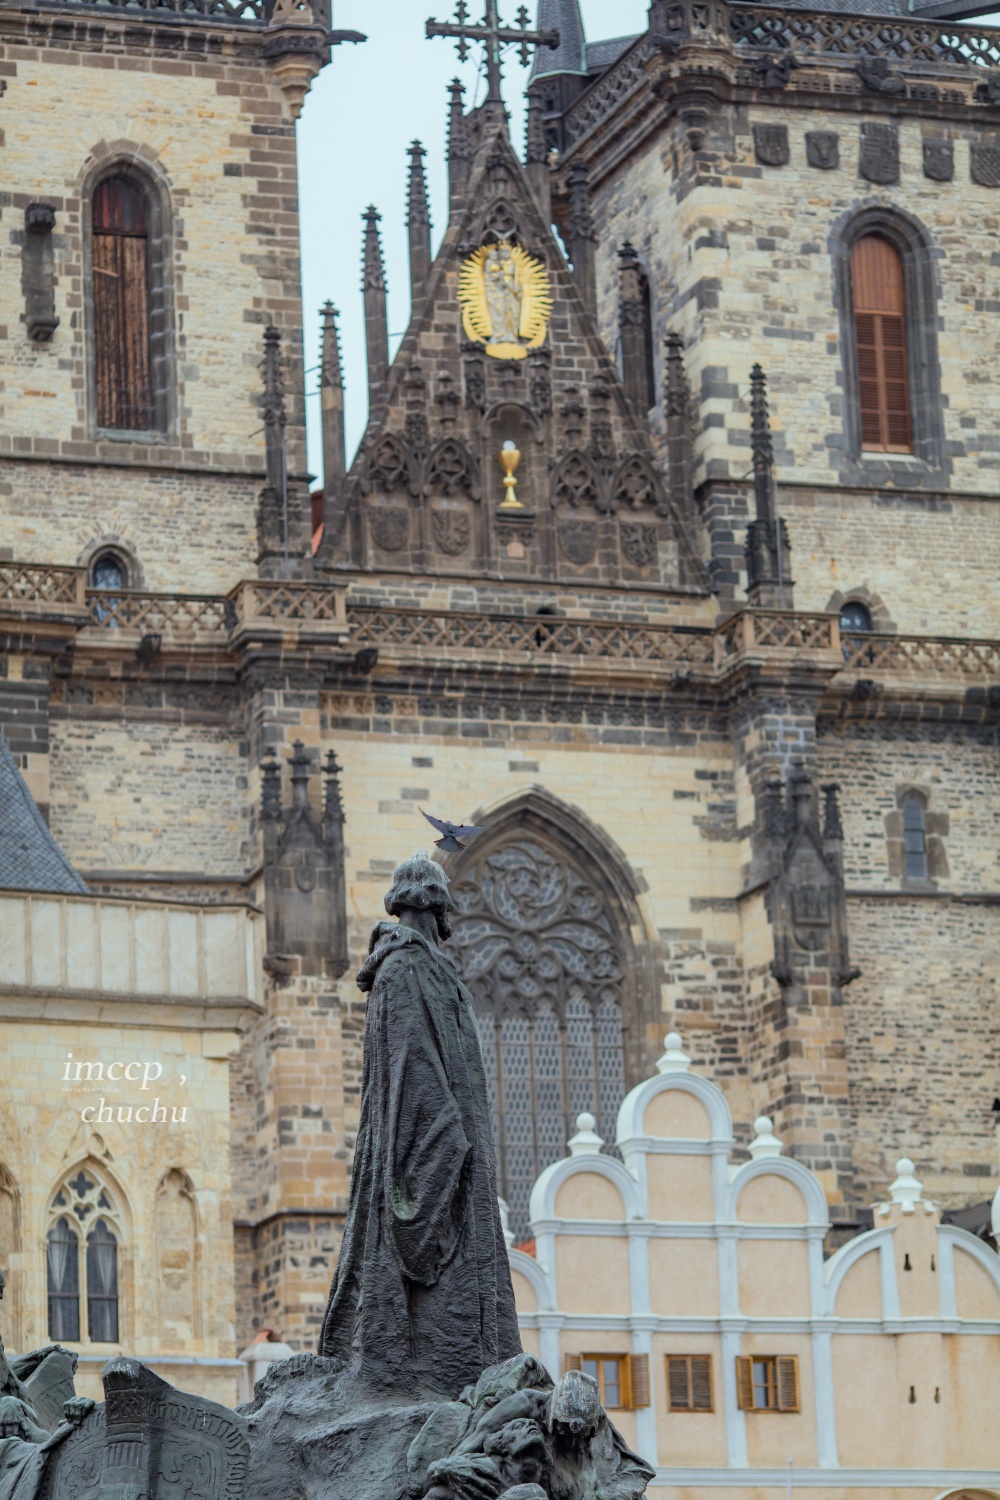 捷克布拉格舊城區,天文鐘,火藥塔,舊城廣場,胡斯雕像